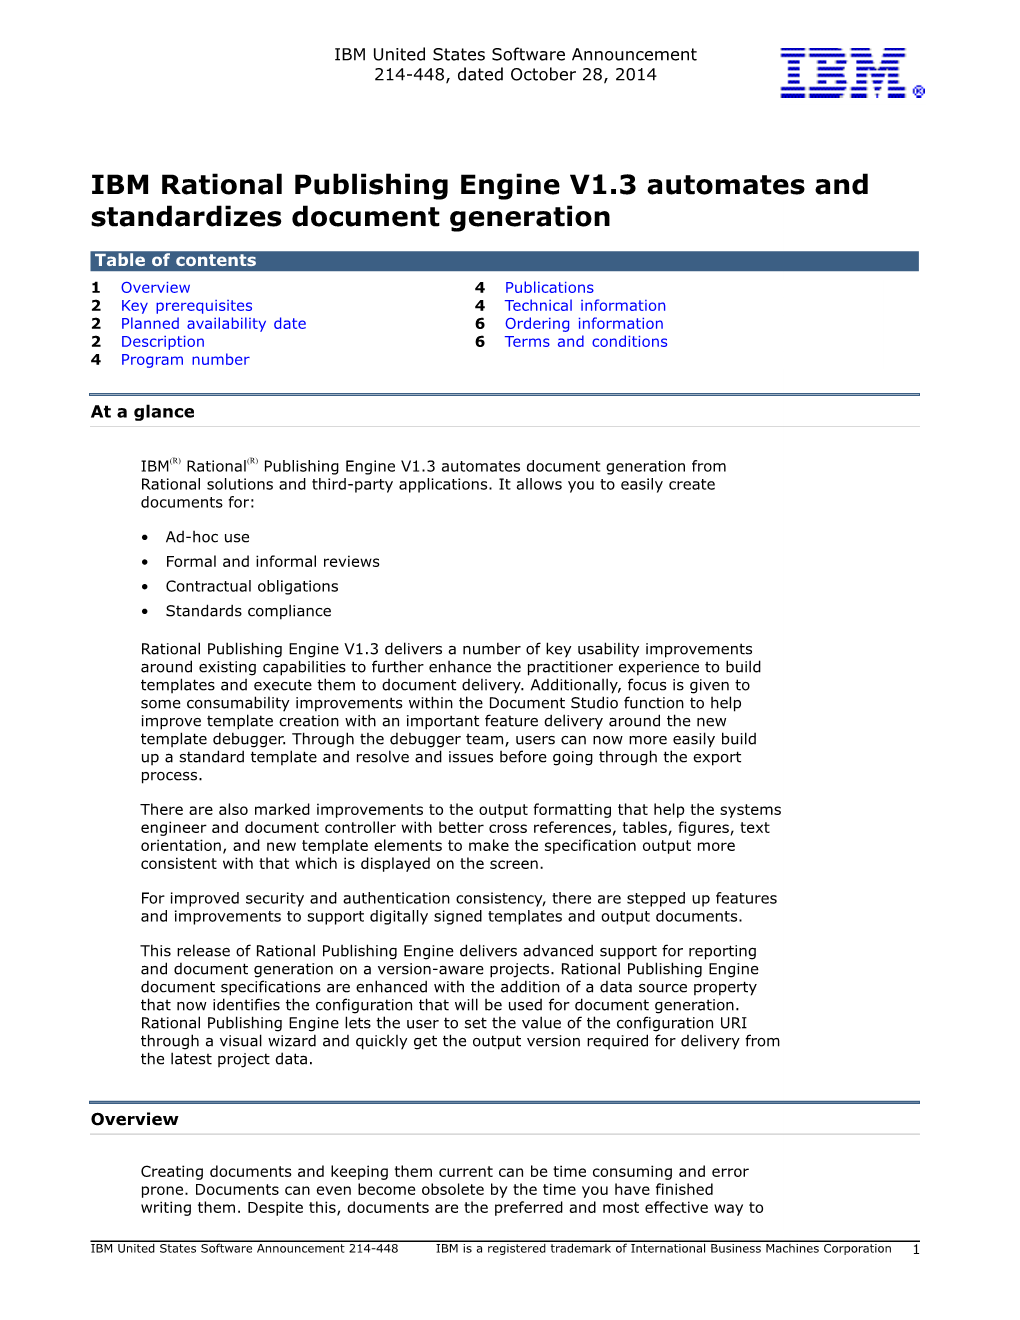 IBM Rational Publishing Engine V1.3 Automates and Standardizes Document Generation